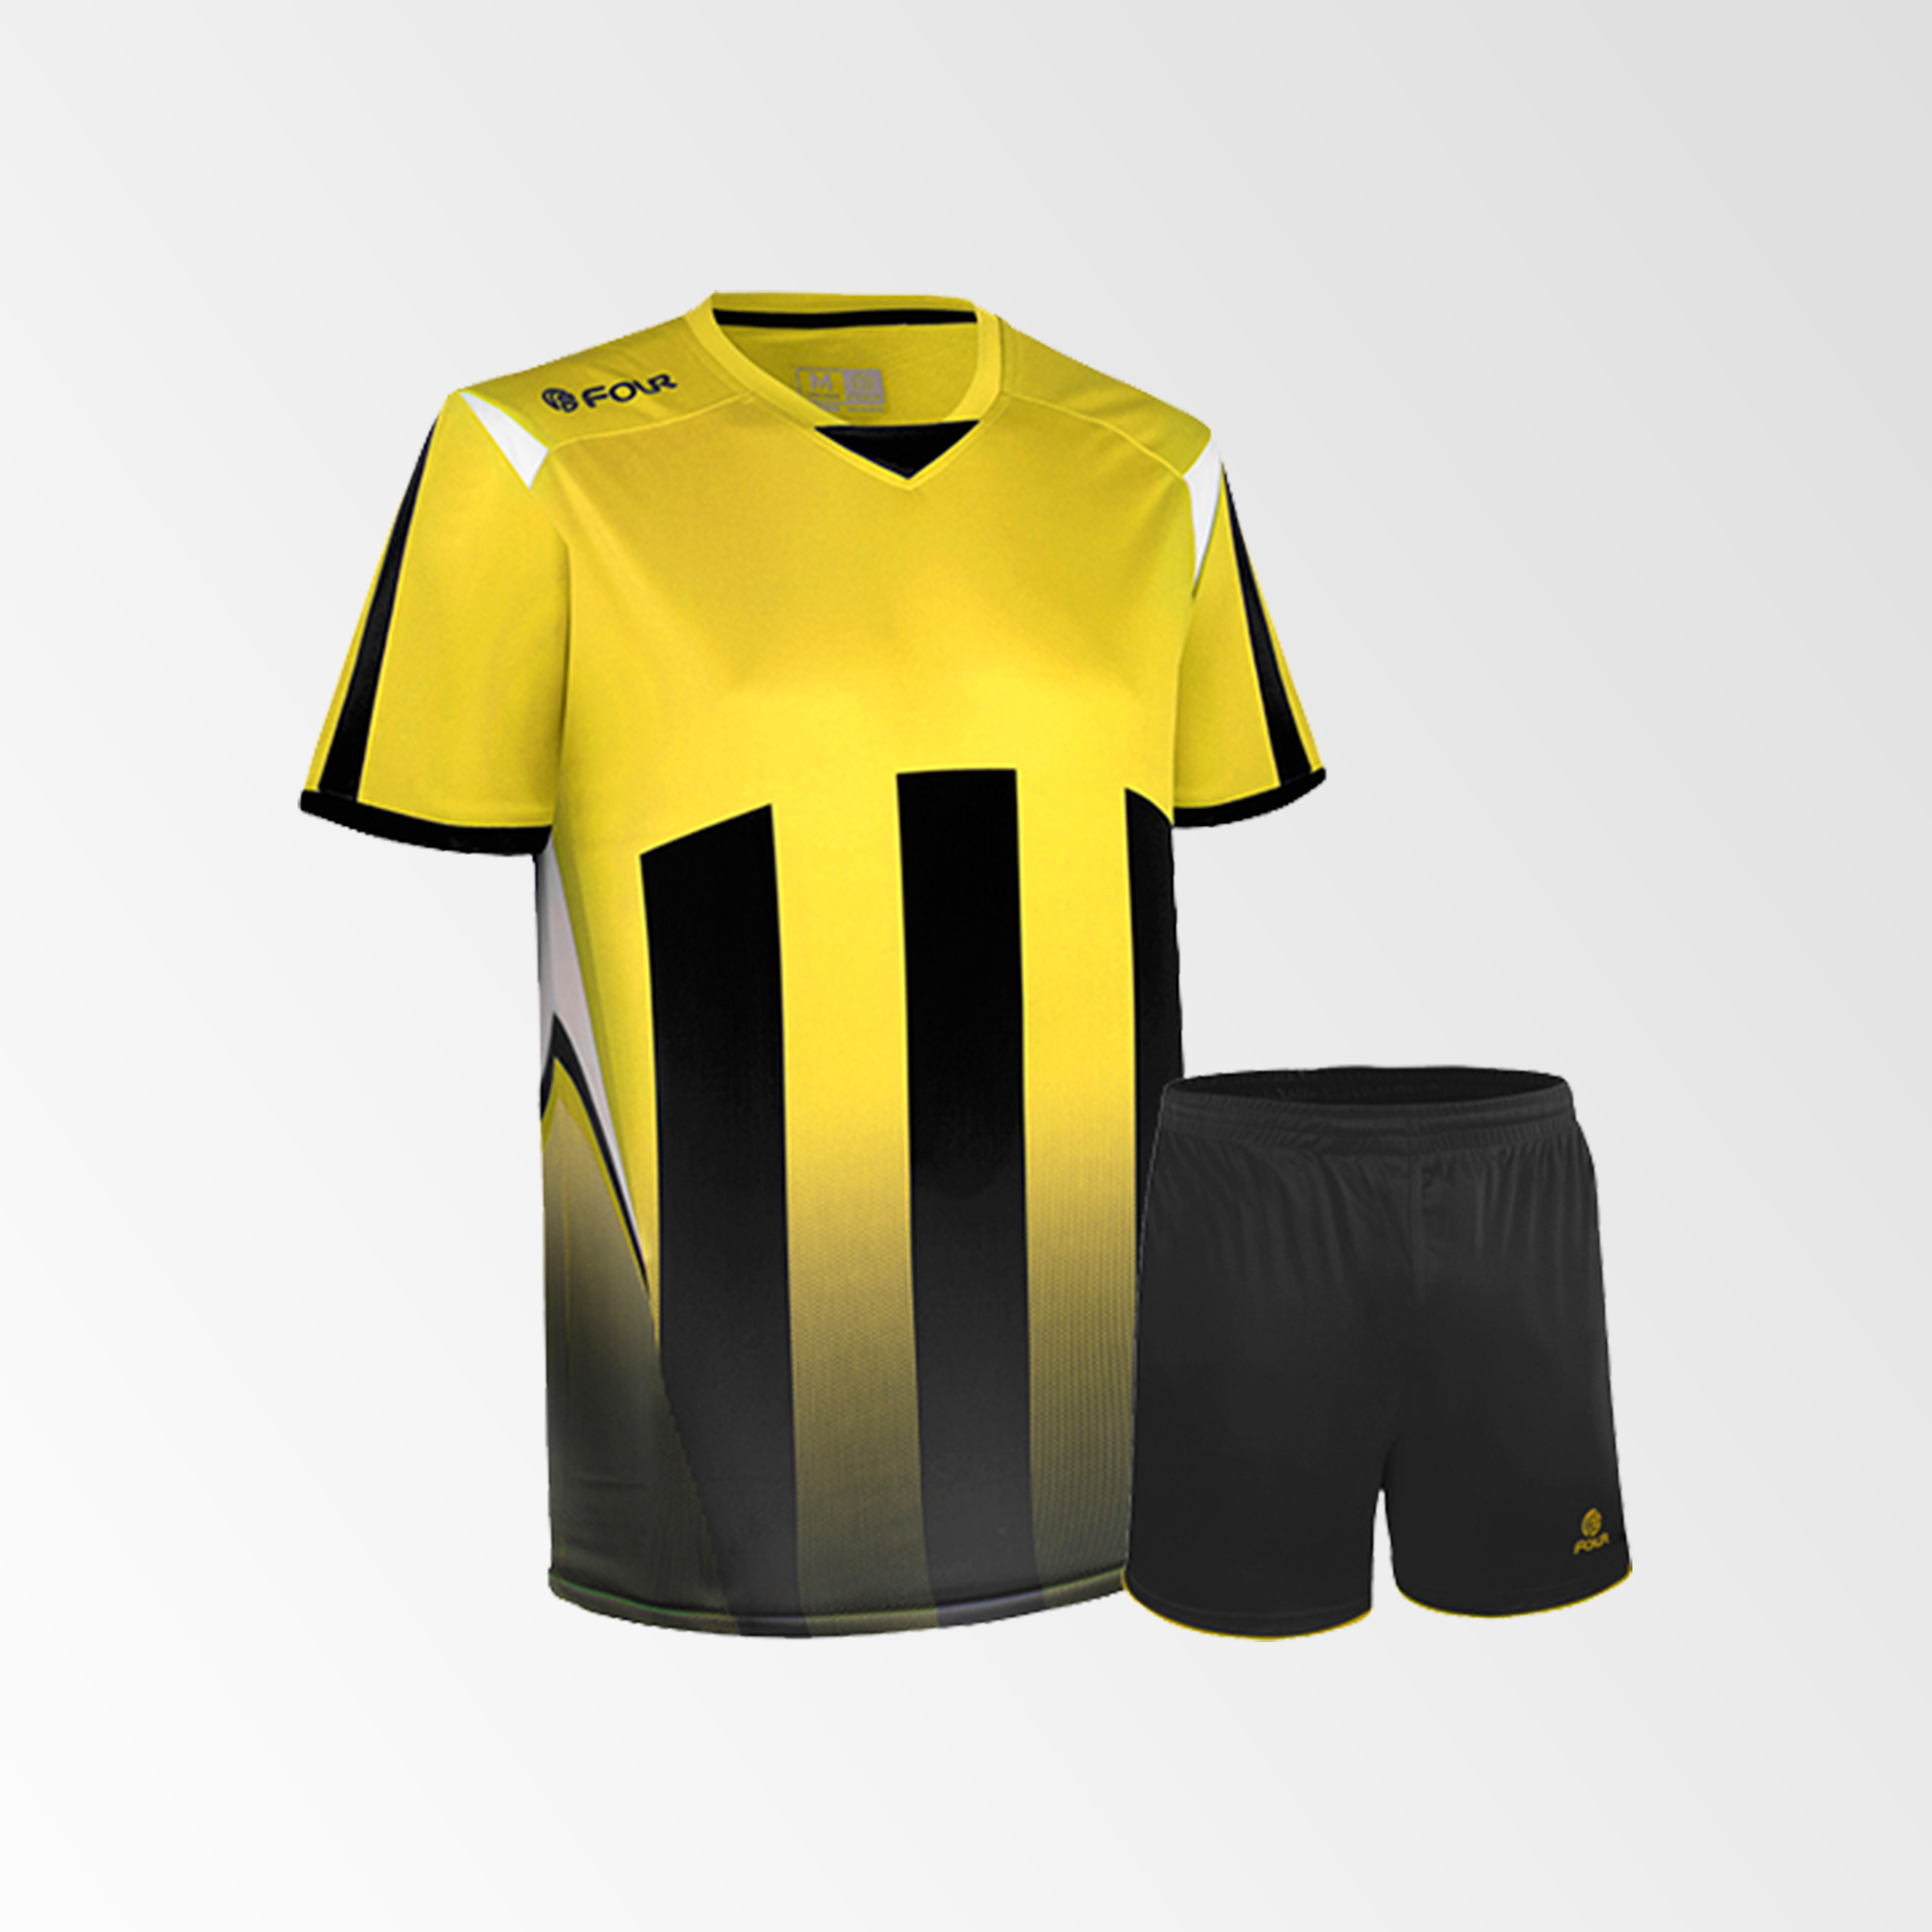 Camiseta de Futbol y Short Modelo Watford Amarillo Blanco Negro